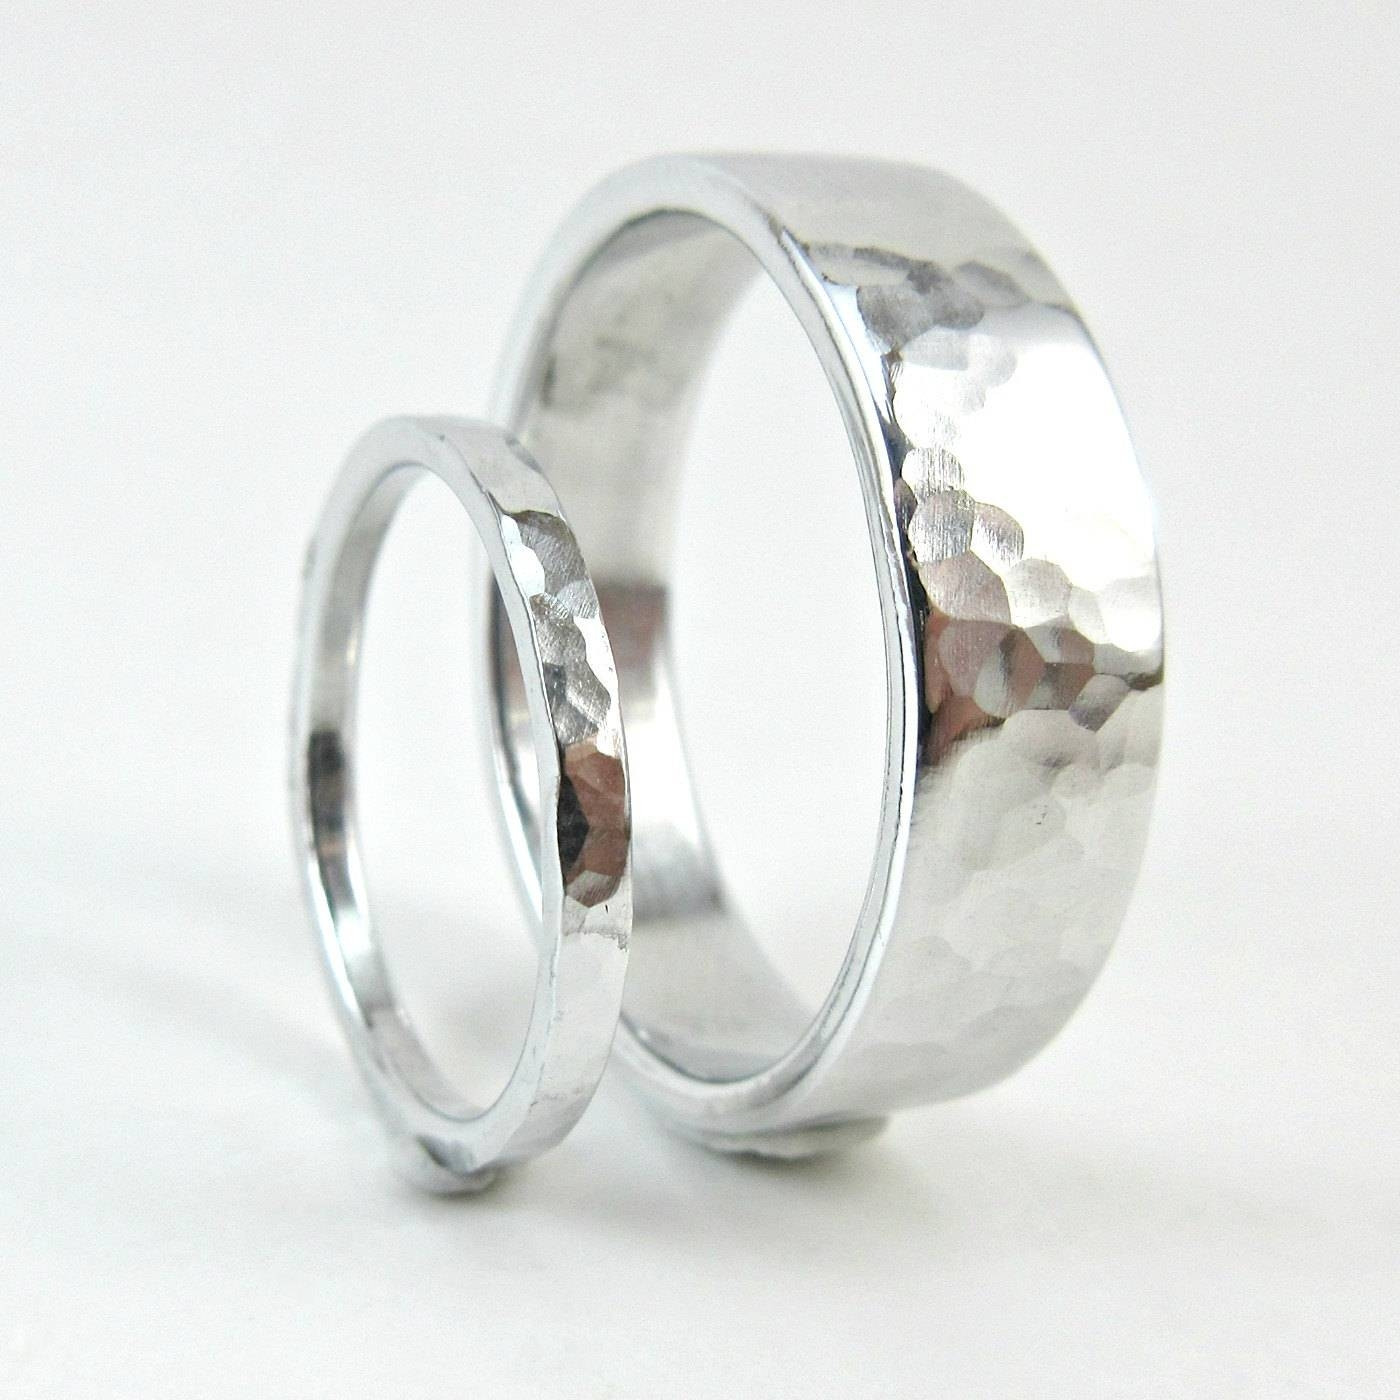 Untraditional Wedding Rings Fresh 15 Best Collection Of Untraditional Wedding Bands Of Untraditional Wedding Rings 